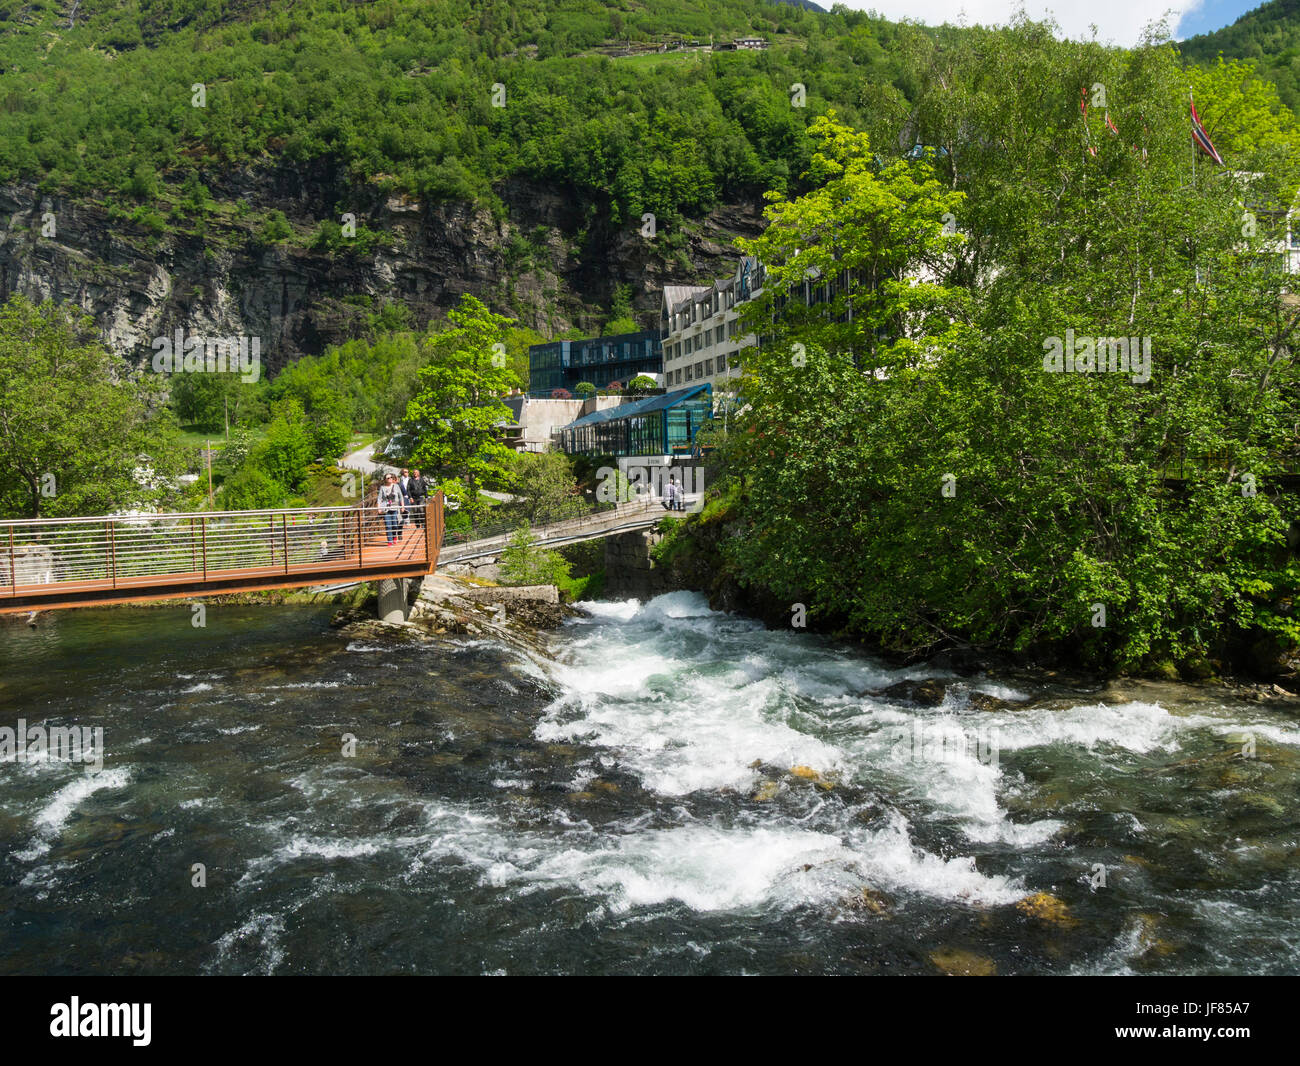 Une passerelle piétonne sur la rivière Geirangelva dans le magnifique petit village de Geiranger Région de Sunnmøre le comté de Møre og Romsdal Norvège Banque D'Images